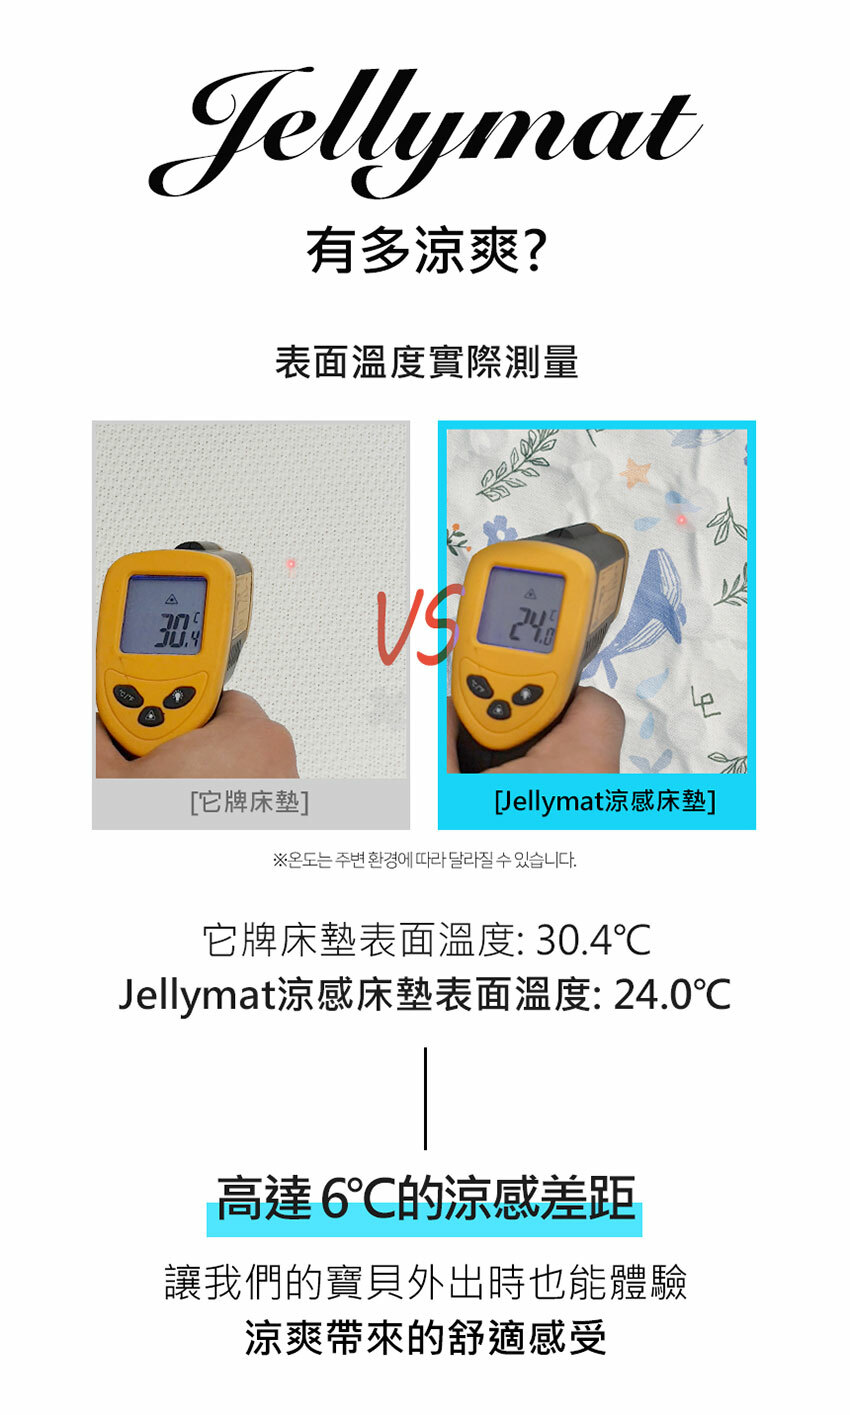 【韓國 Jellypop】Jellymat 全新微顆粒酷涼珠 100%純棉果凍床墊 - 海洋鯨靈